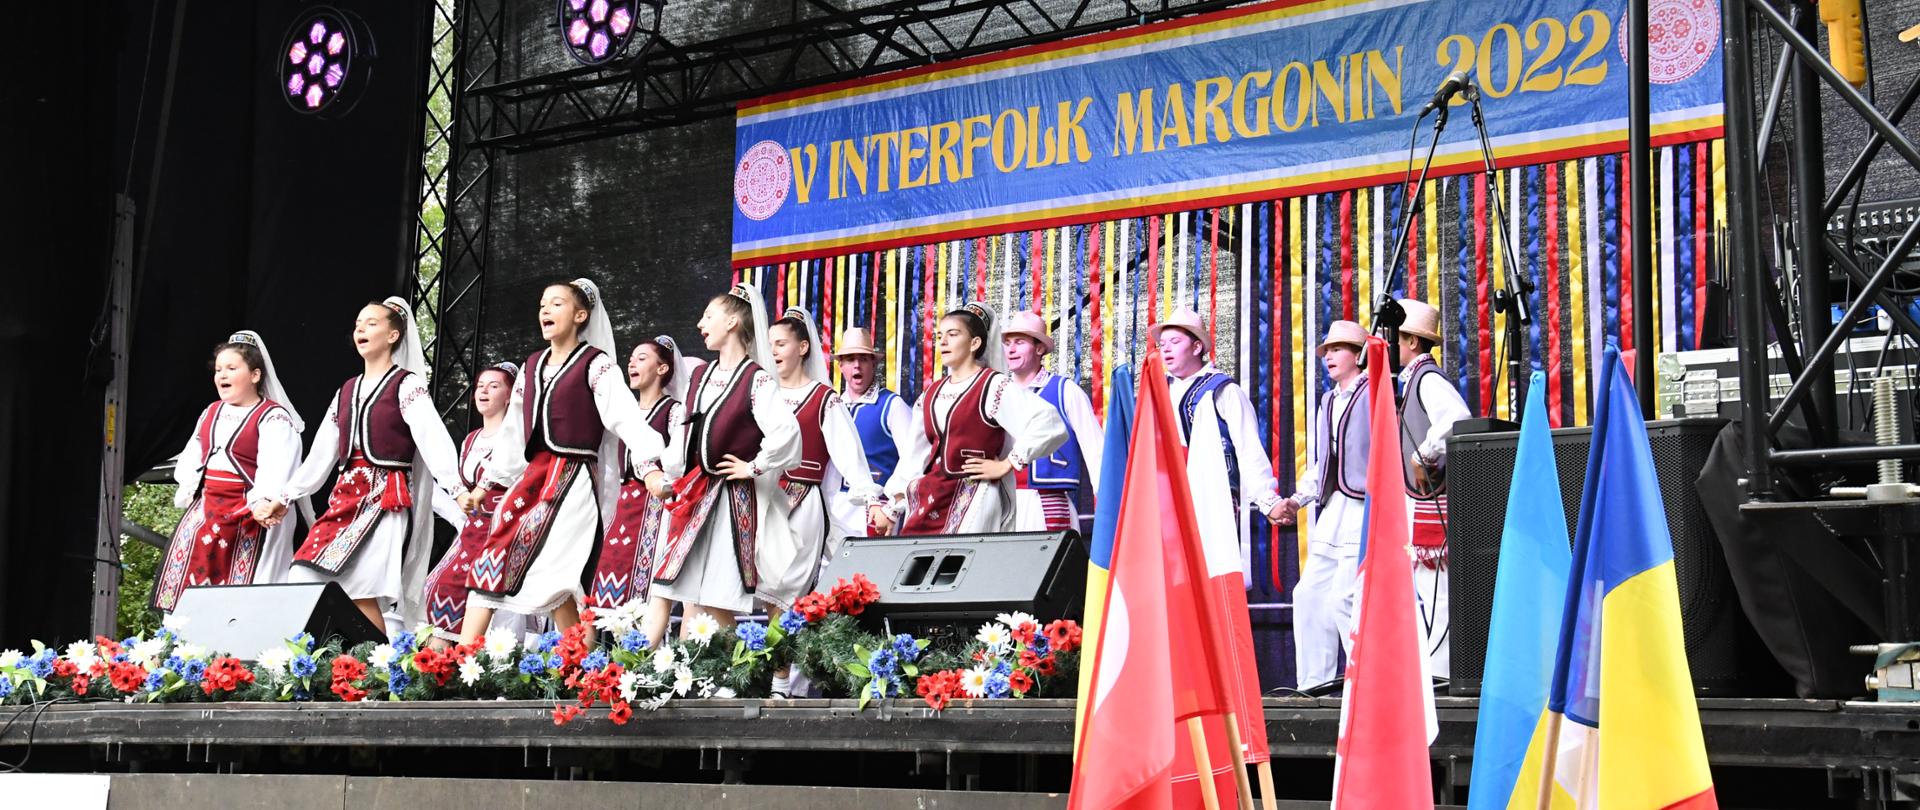 Zespół Doina Casimcei z Rumunii na scenie w komplecie ok. 25 osób, dziewczęta z przodu i chłopcy z tyłu. Ubrani w tradycyjne stroje ludowe. Z tyłu sceny wielki baner z napisem InterFolk Margonin 2022 oraz na pierwszym planie flagi krajów biorących udział w festiwalu.